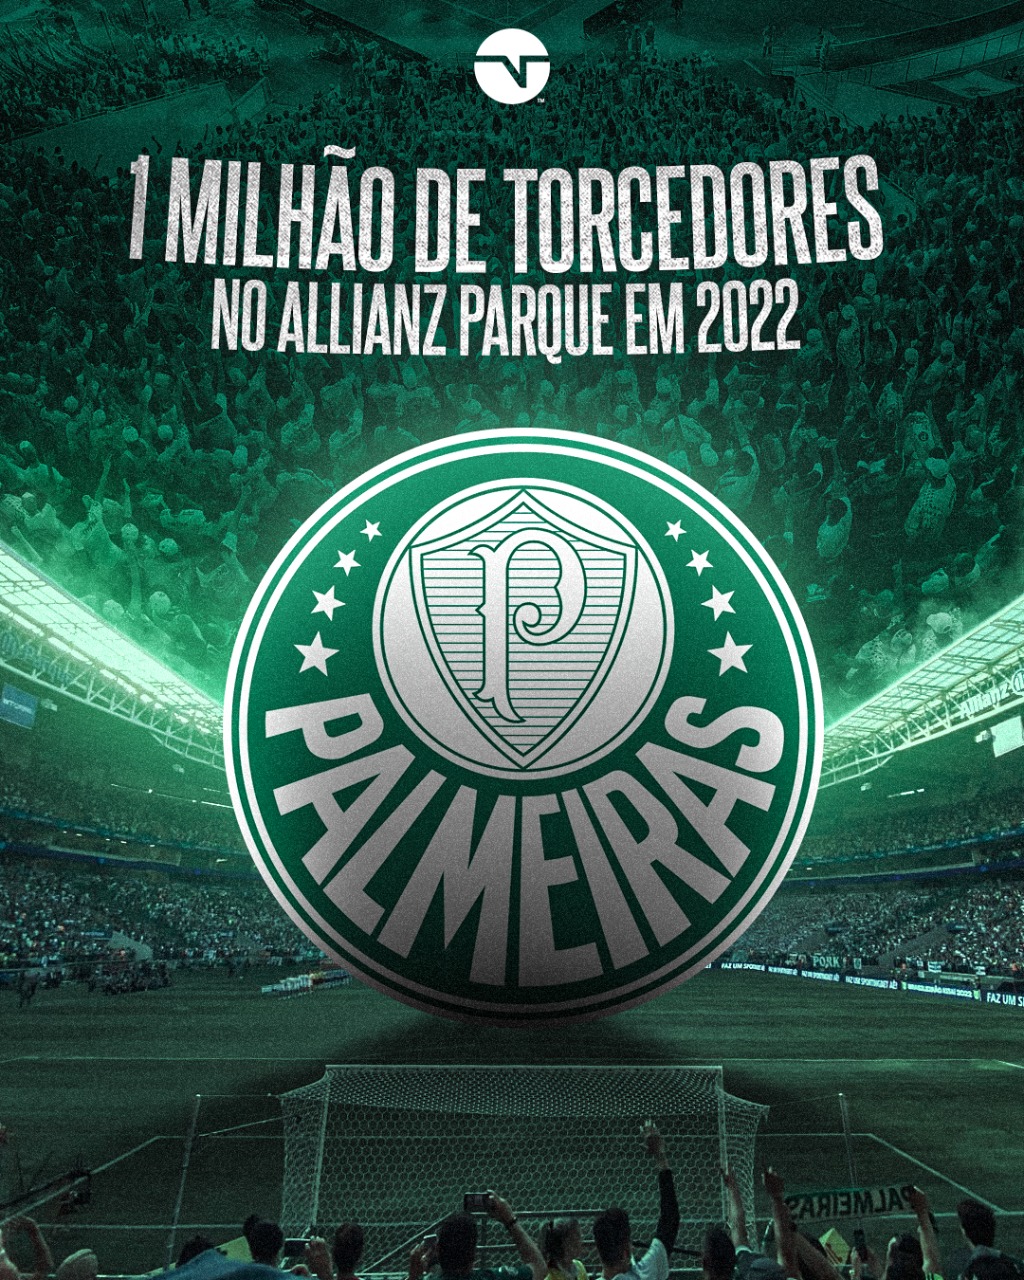 SÃO PAULO, SP - 10.07.2021: PALMEIRAS X SANTOS - Marinho during the game  between Palmeiras and Santos held at Allianz Parque in São Paulo, SP,  Brazil on July 10, 2021. The match